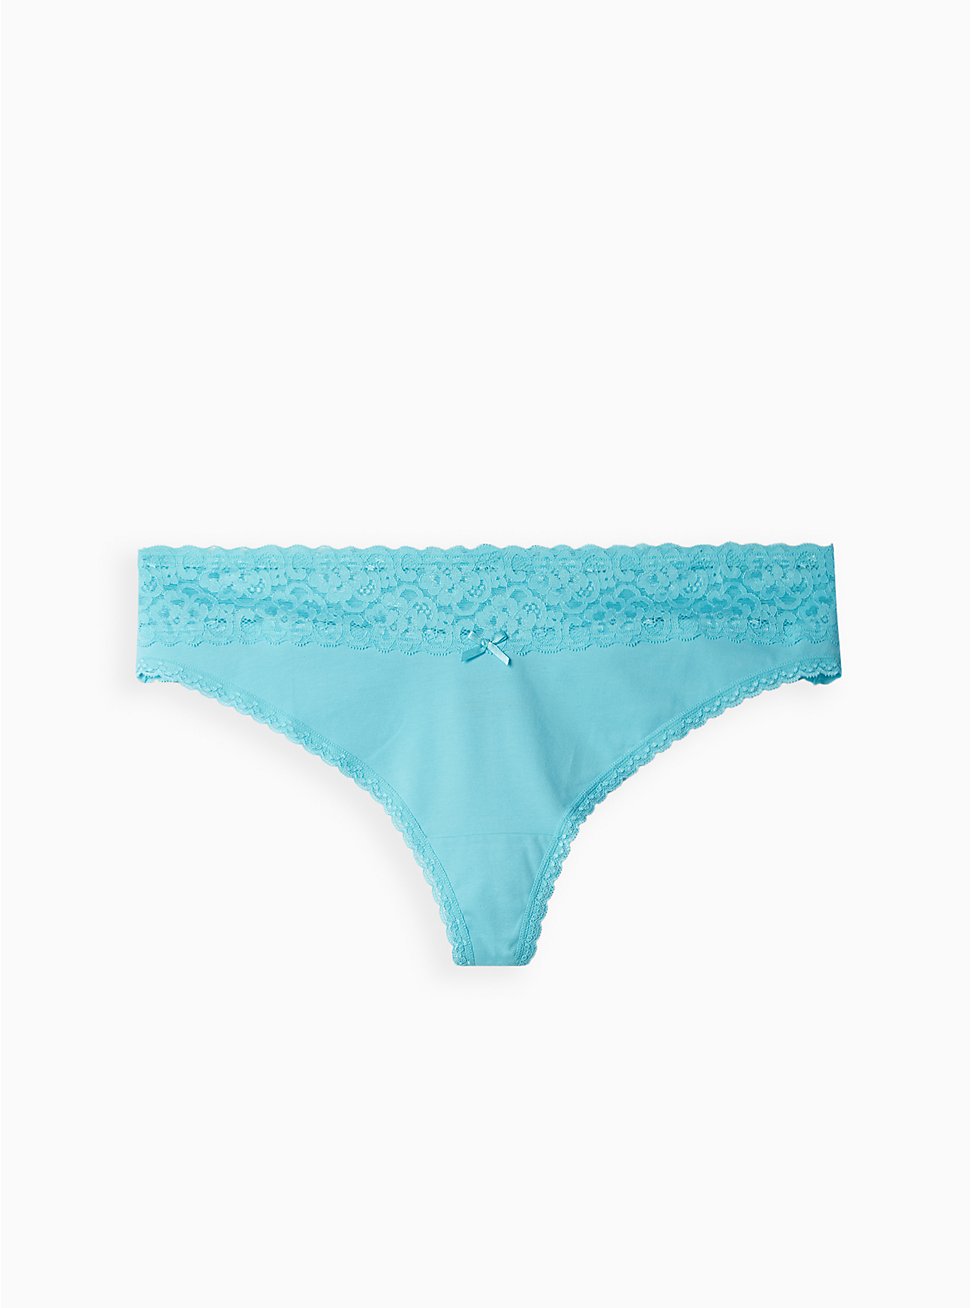 Plus Size Wide Lace Trim Thong Panty - Cotton Blue, BLUE RADIANCE, hi-res